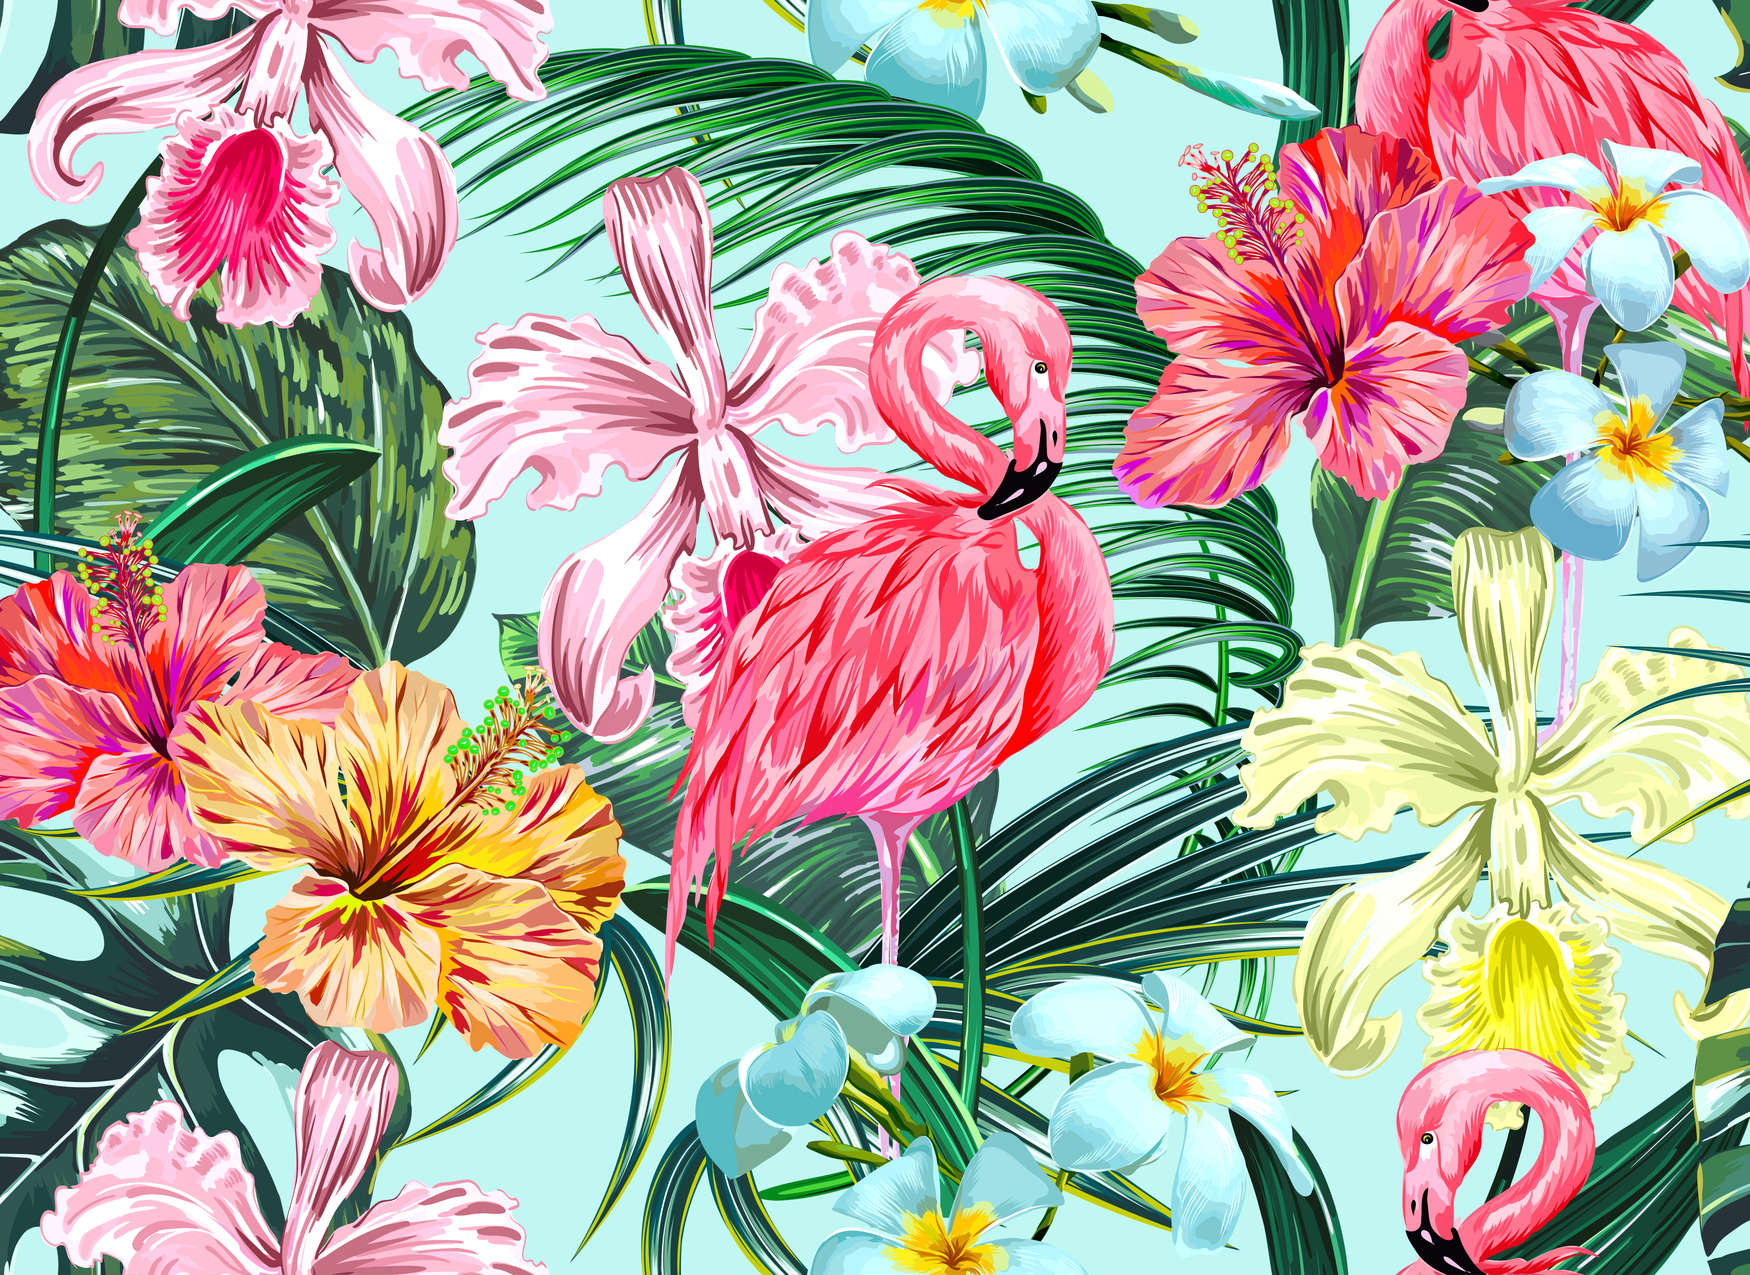             Papel Pintado Tropical con Flamingo - Colorido, Azul, Verde
        